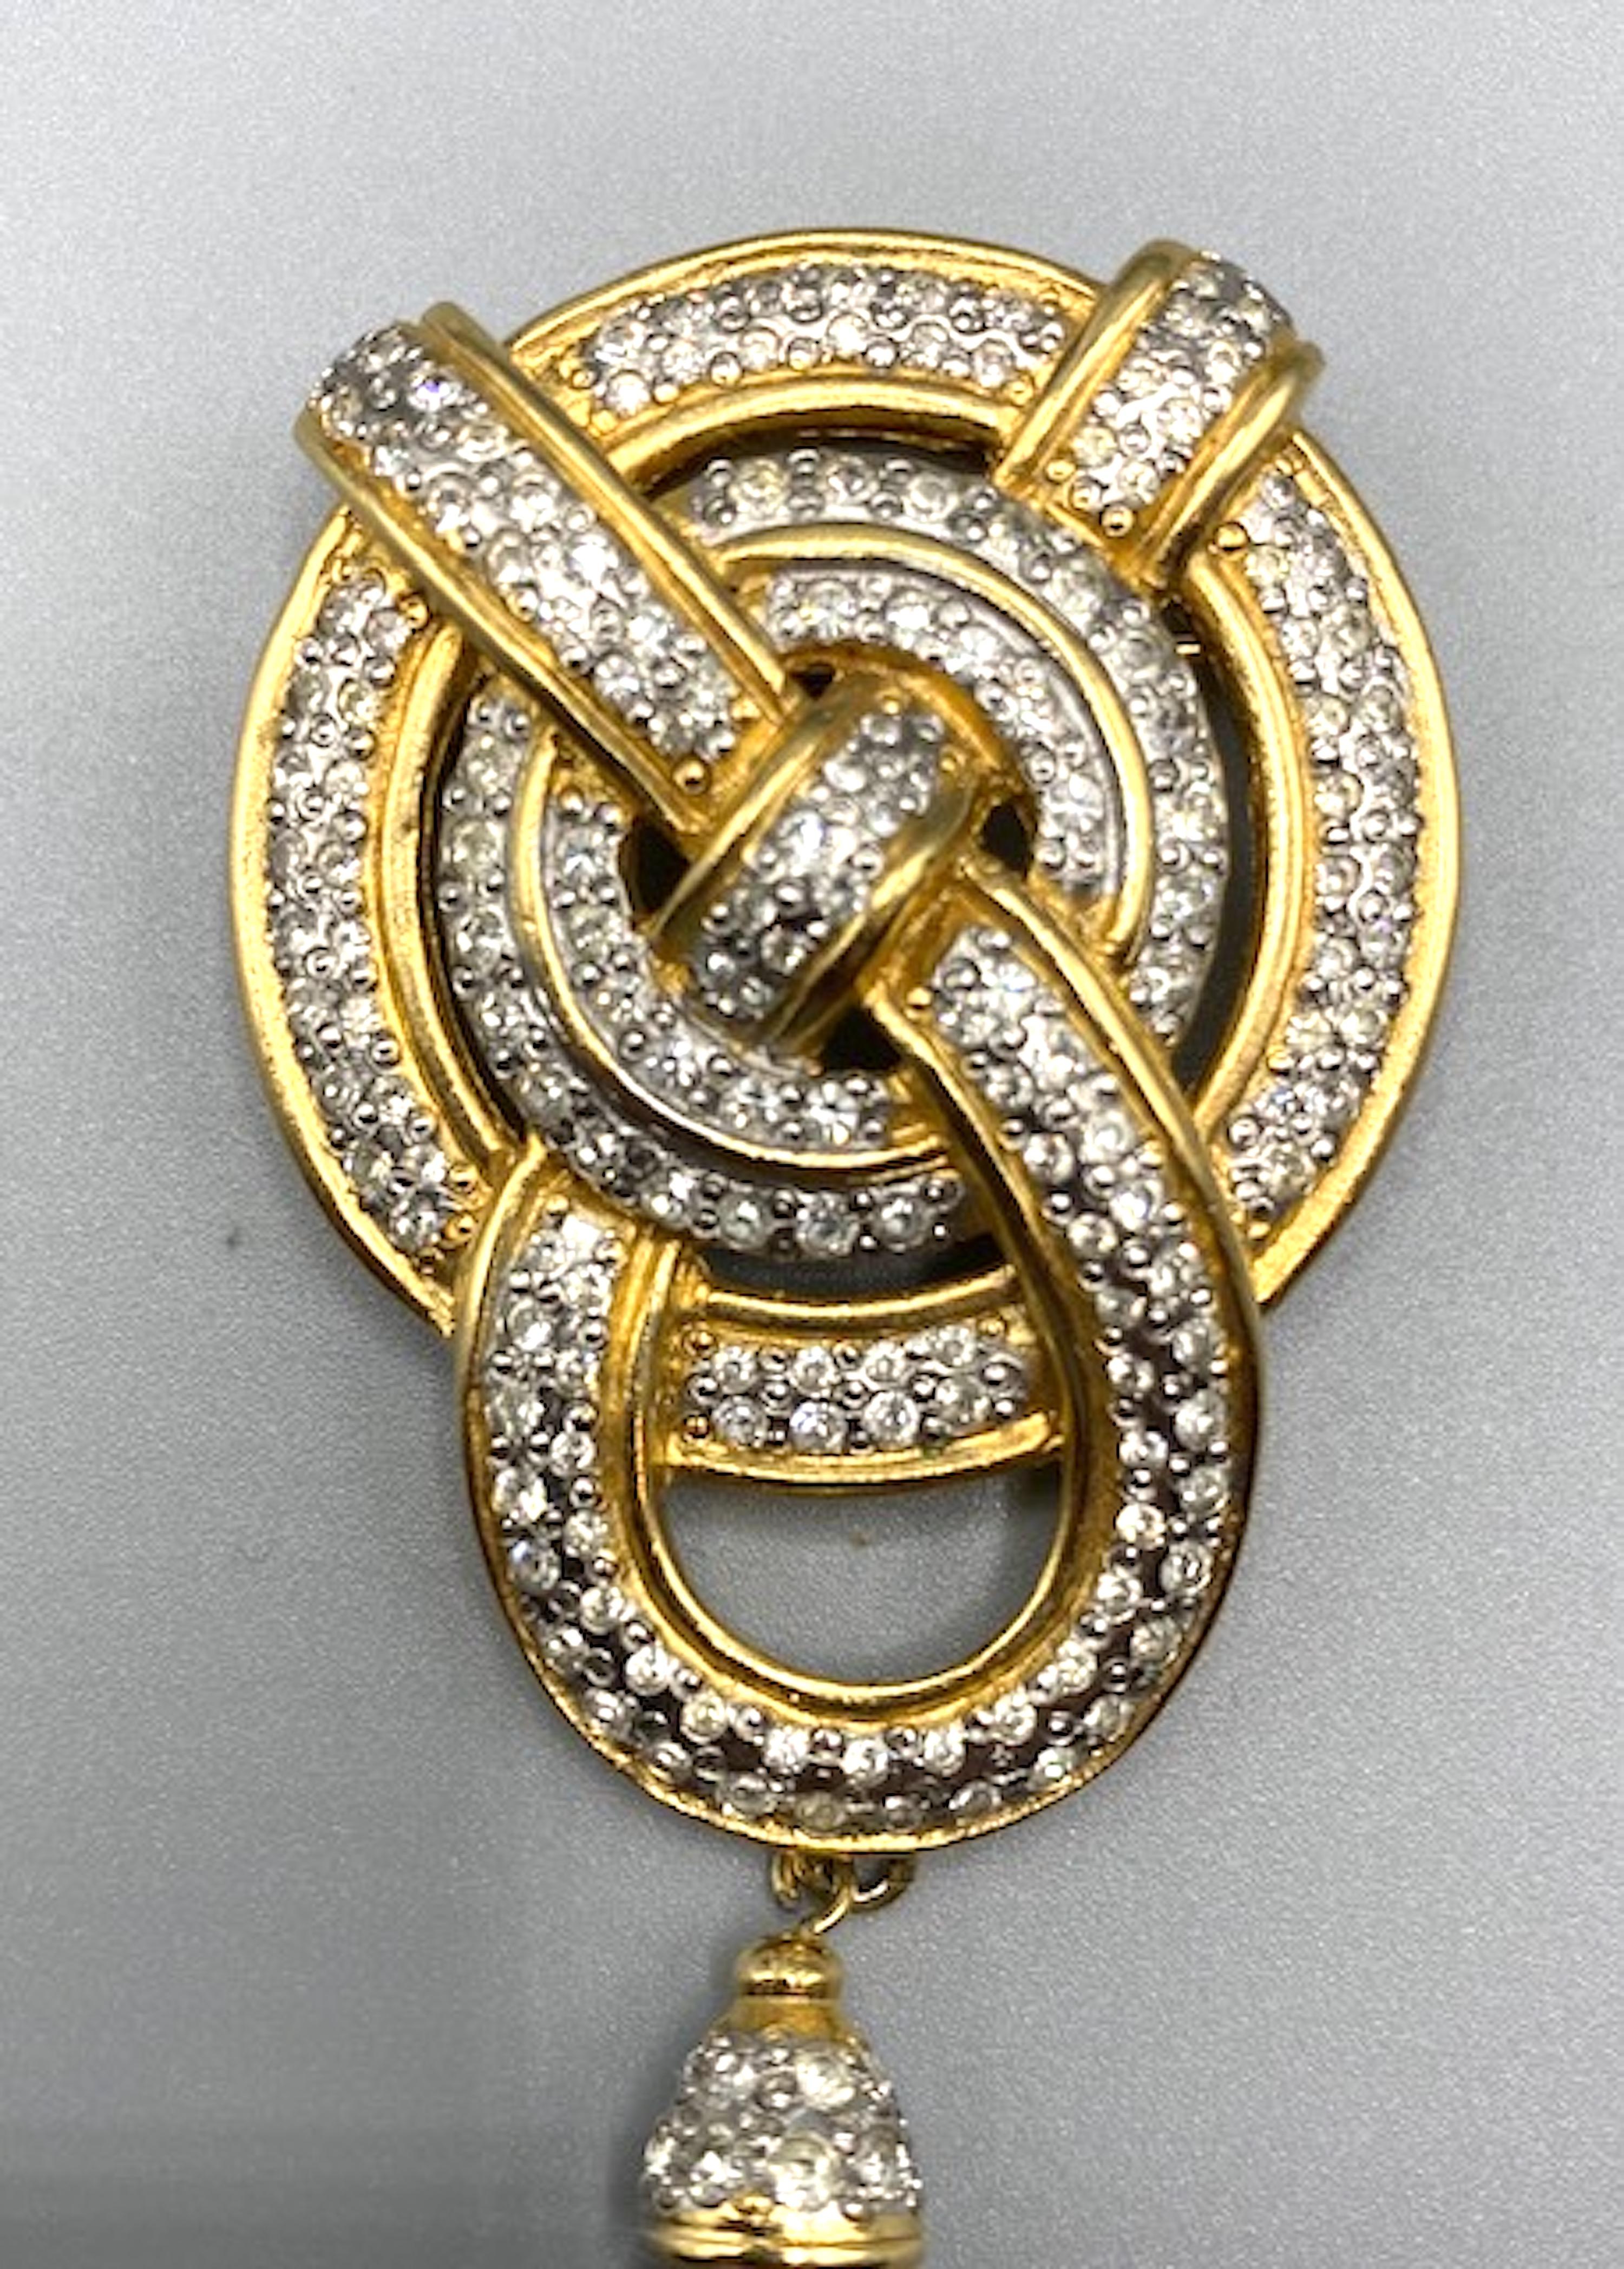 Exquis  et élégante broche géométrique dorée Valentino Garavani made in Italy, avec cercles dorés entrelacés de strass et pendentif en perle de verre noire.
mesure 3,5 in par 1,5/8